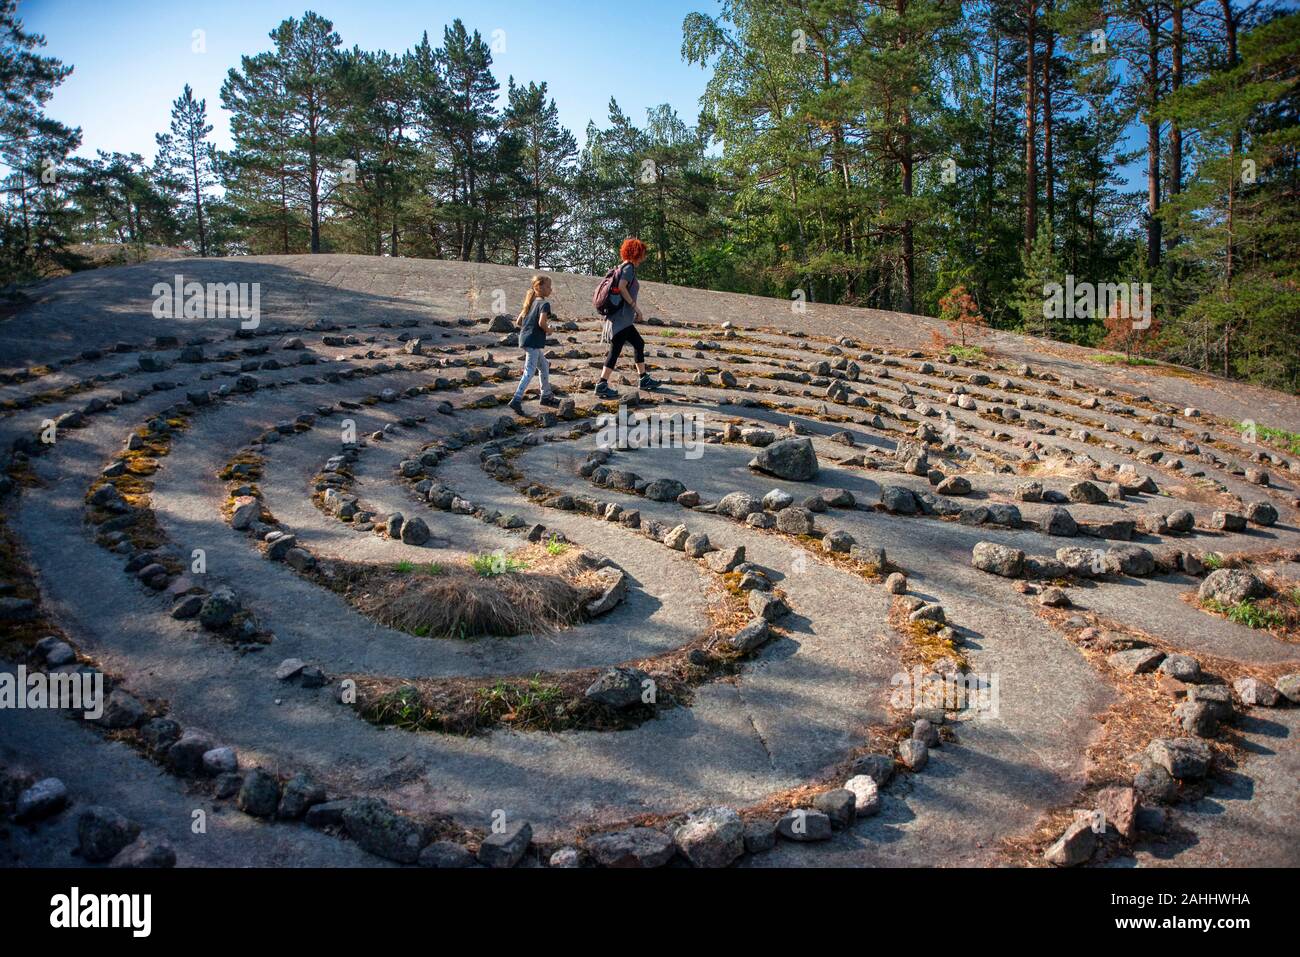 Jungfrudansen Stein Labyrinth in der Nähe Finby Nagu Archipel trail  Finnlands Südwesten Finnland Turku Archipel. Spaziergang durch die Natur zu  einem Rasen Labyrinth wissen als Stockfotografie - Alamy